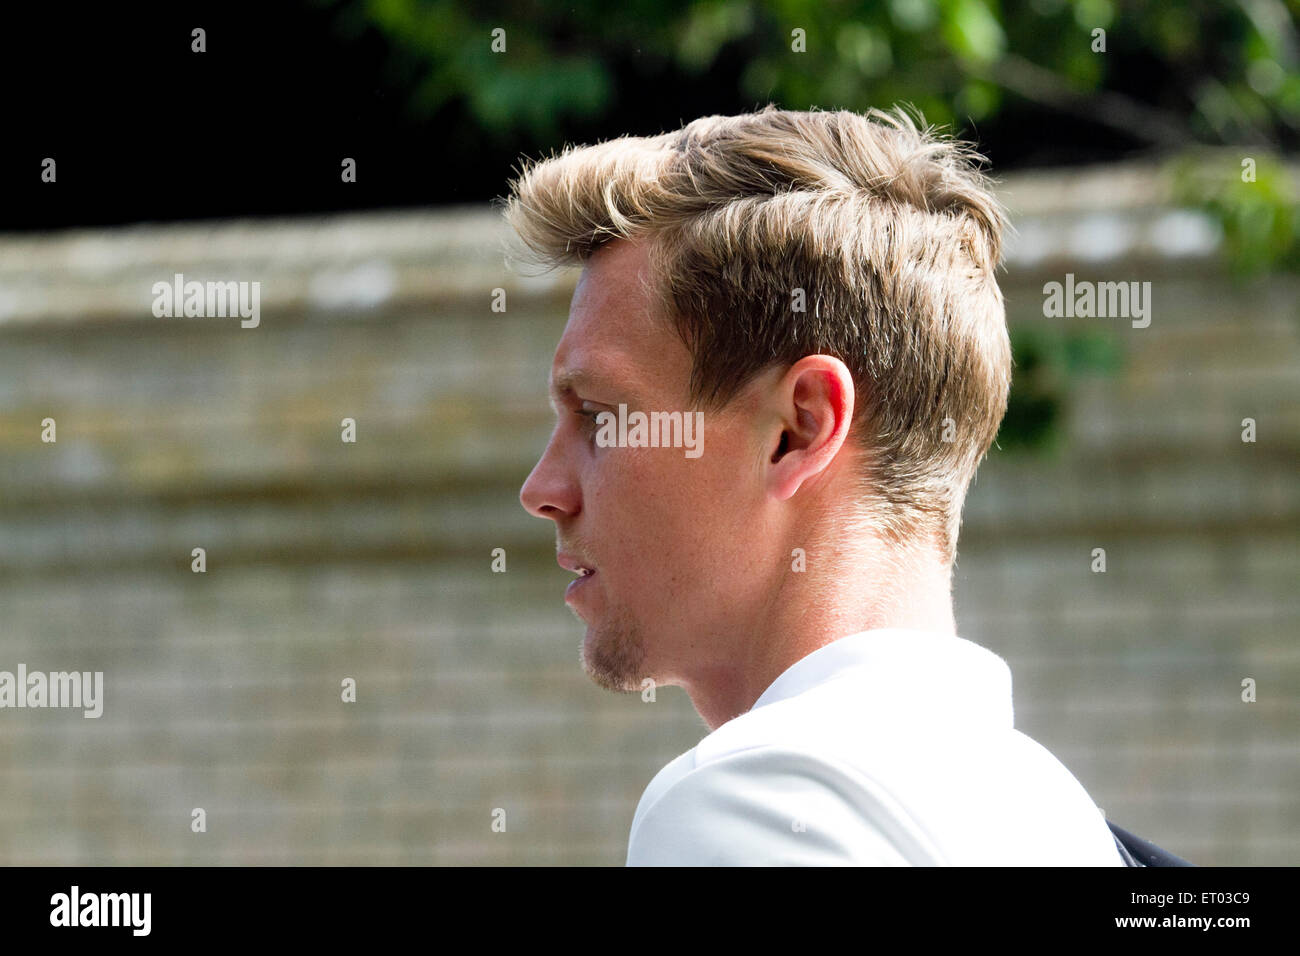 Wimbledon Londra,UK. Il 10 giugno 2015. Ceca giocatore di tennis Tomas BERDYCH arriva a WImbledon AELTC per la pratica del credito: amer ghazzal/Alamy Live News Foto Stock